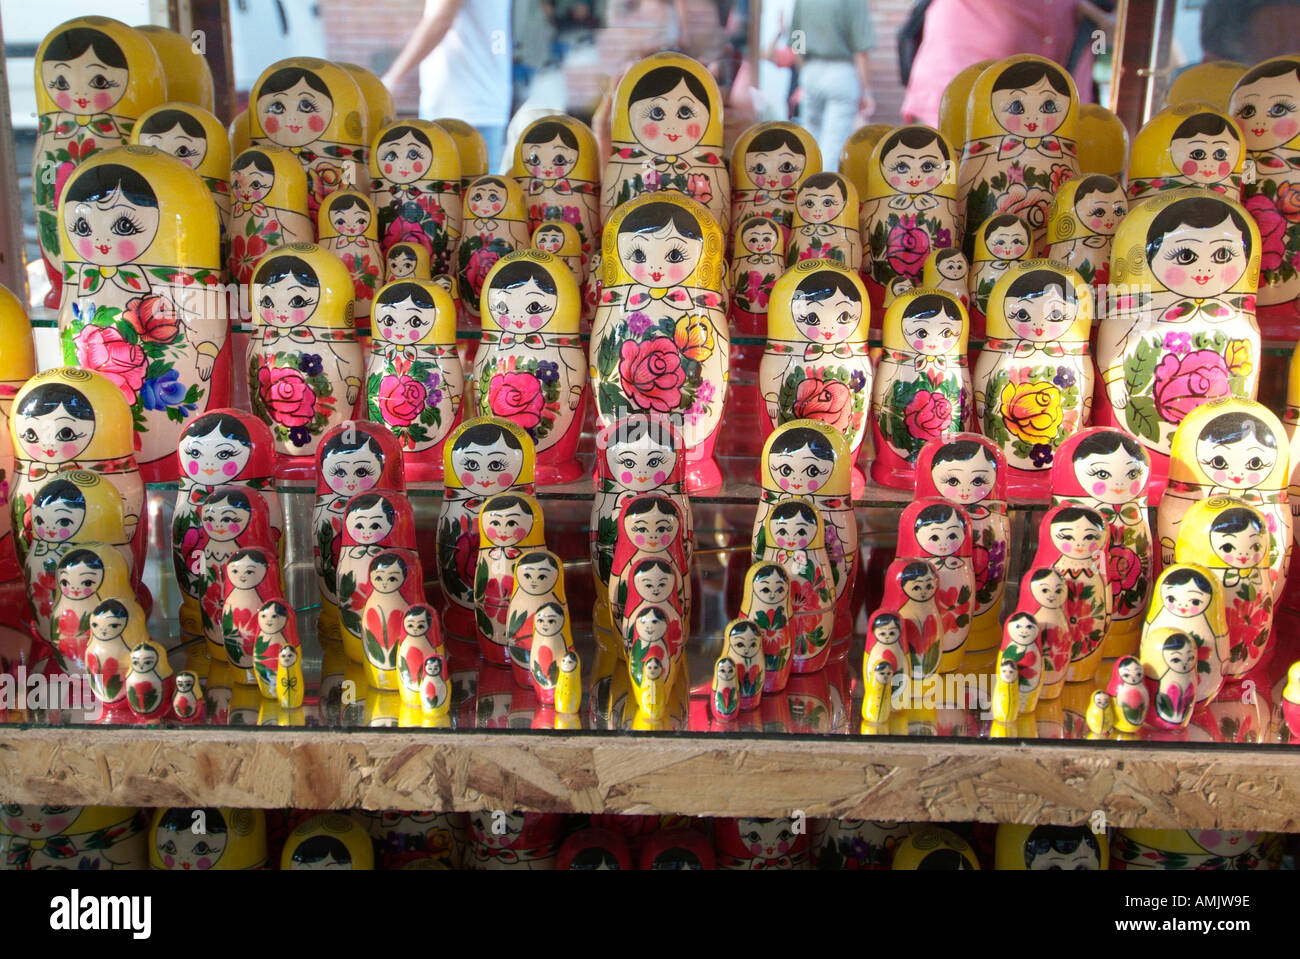 Nidification Babushka doll boutique de souvenirs Bulgarie République Populaire Narodna Republika Bulgariya la péninsule des Balkans au sud-est de l'Europe Banque D'Images